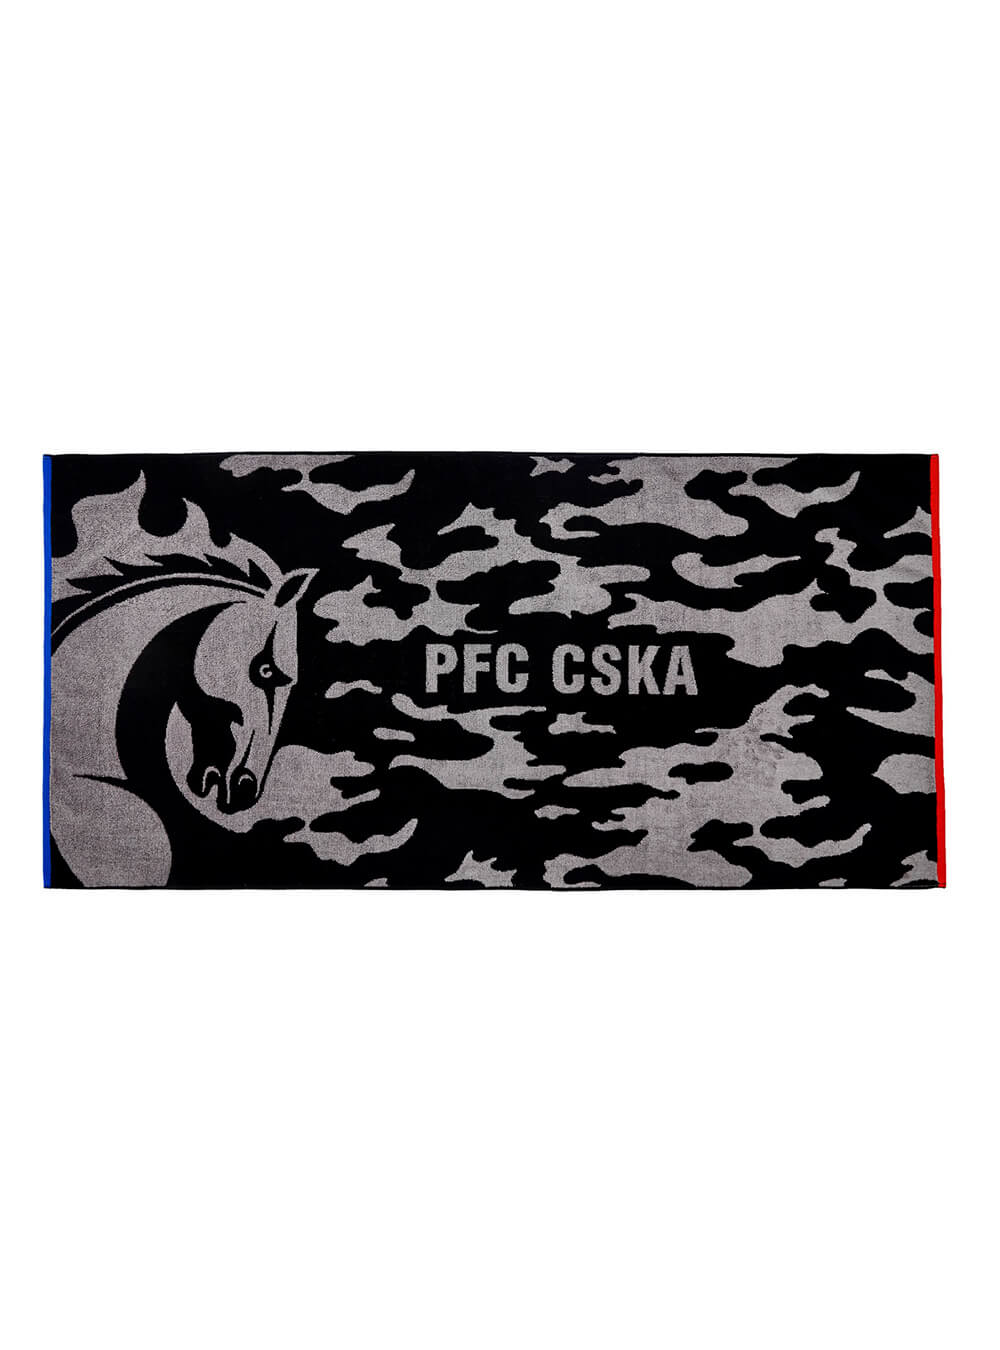 Полотенце PFC CSKA CAMO 140 х 70 см, цвет чёрный